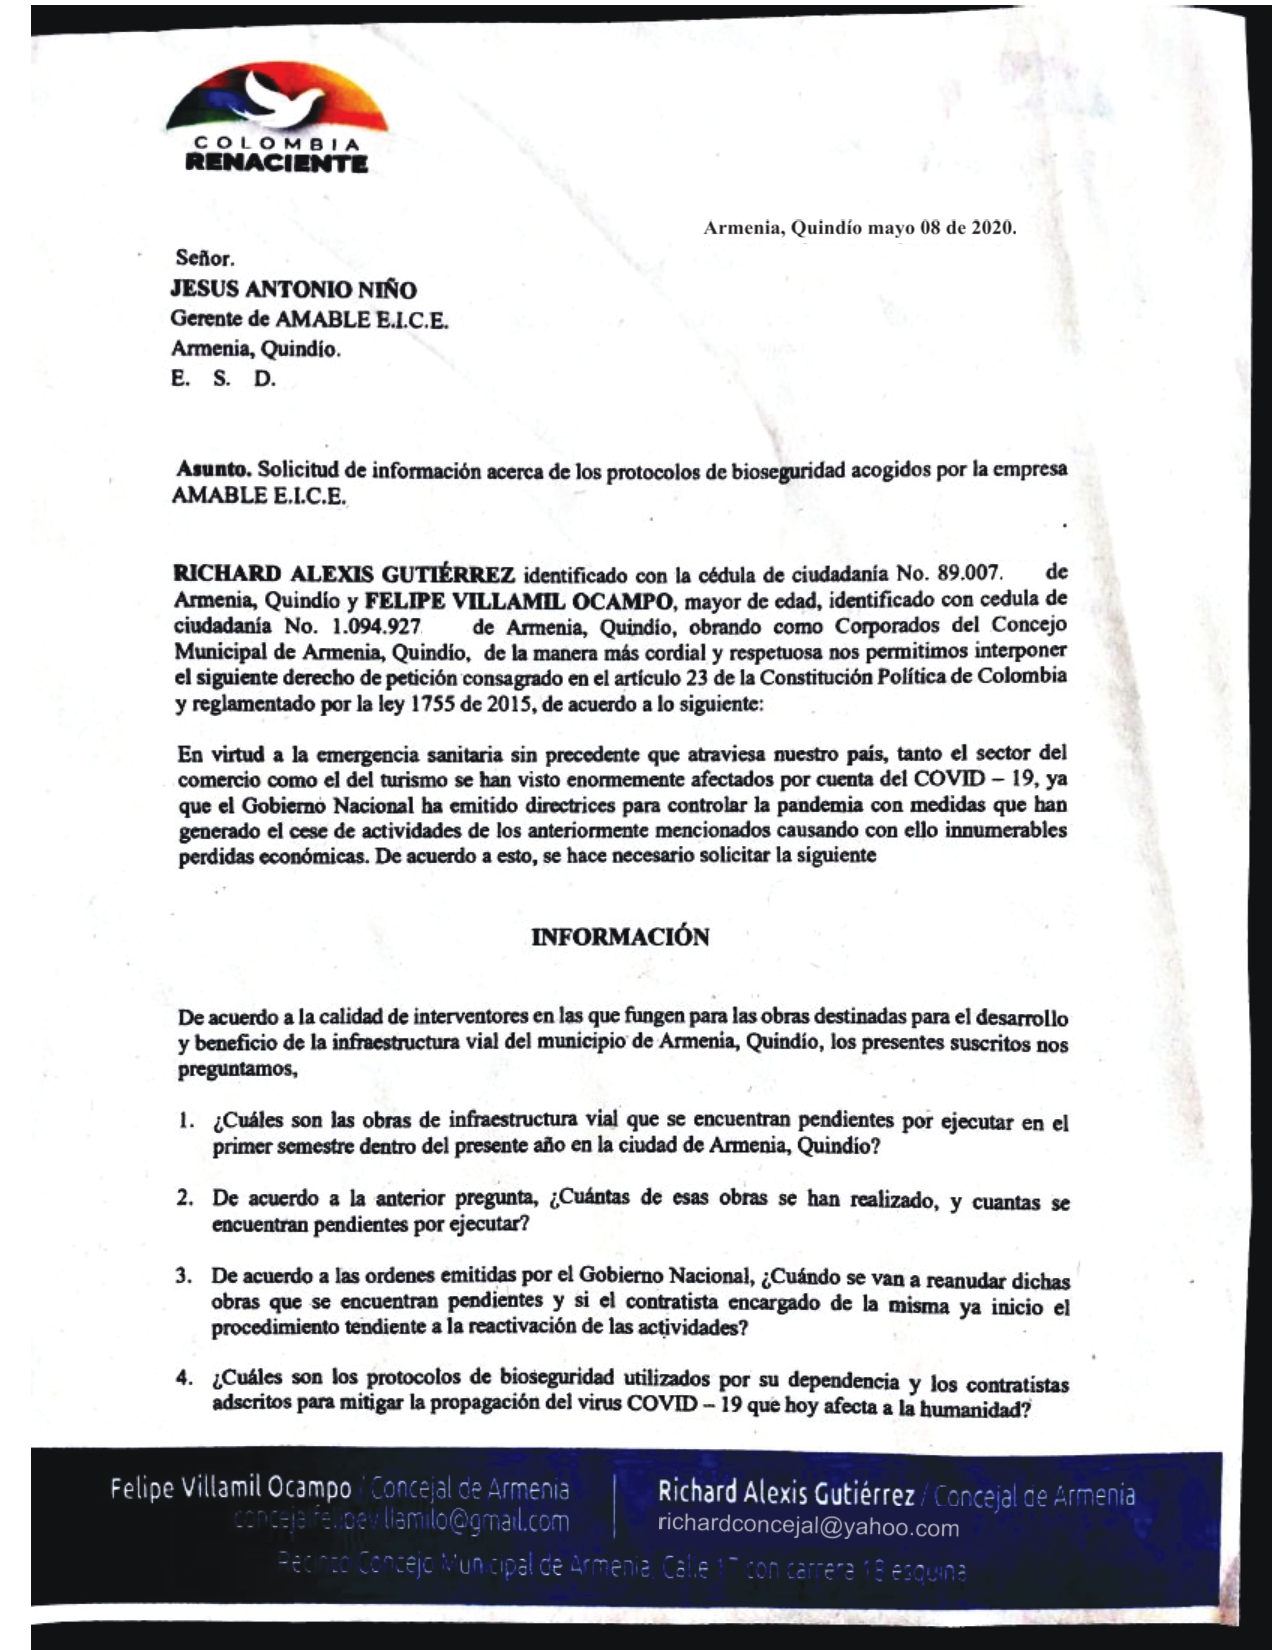 derecho de peticion concejales col Renaciente 1 pages to jpg 0001